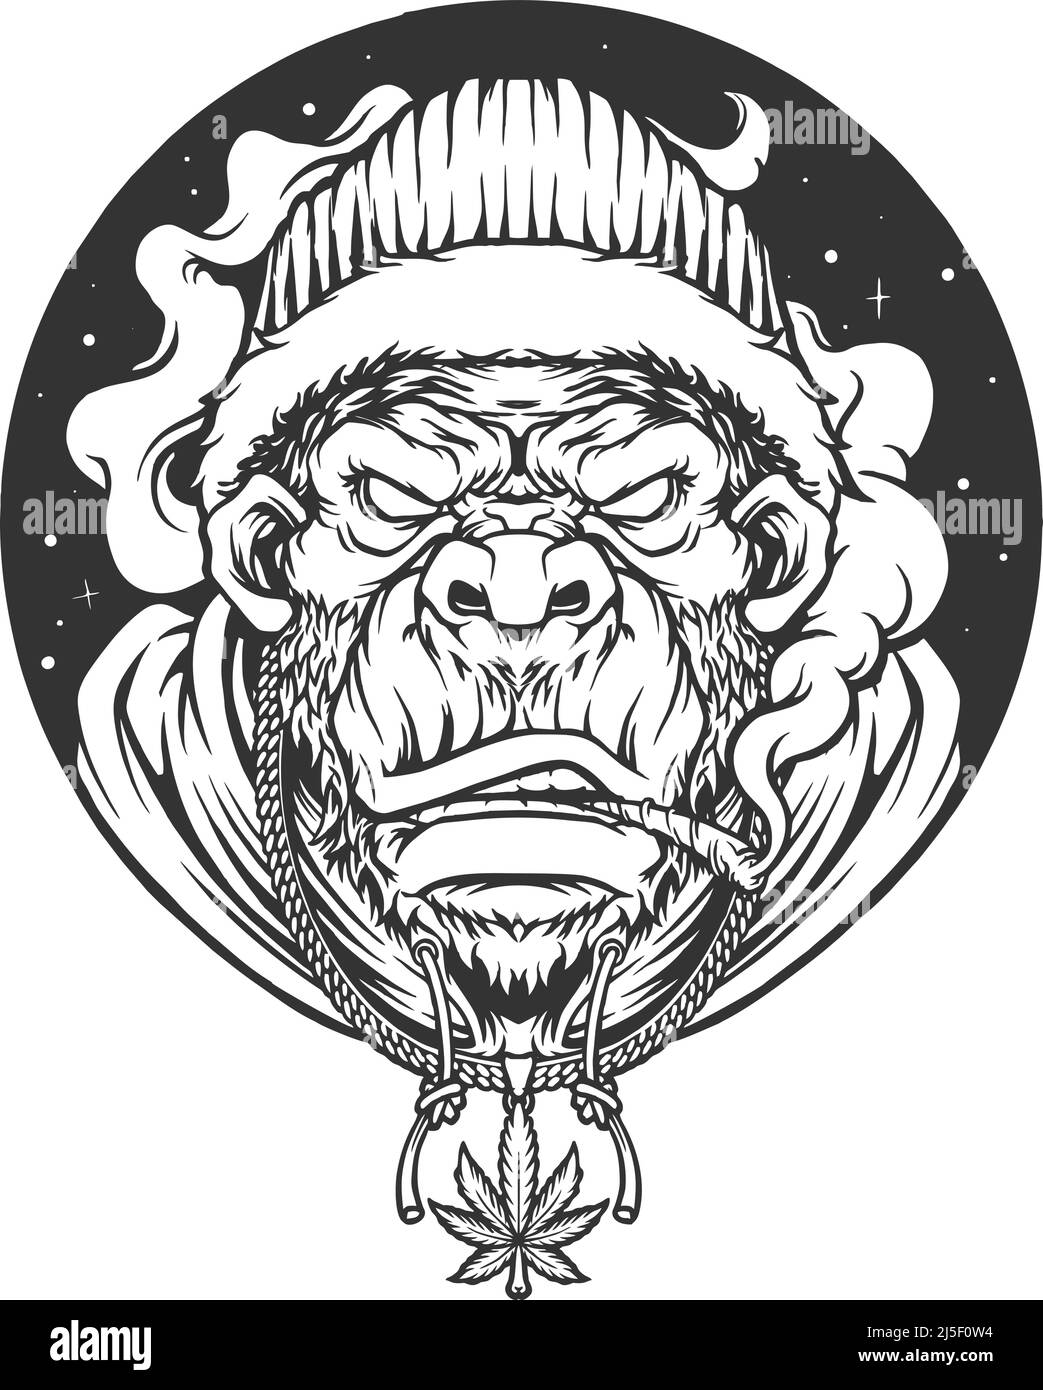 Rasta Gorilla mit rauchenden Gras Silhouette Vektor-Illustrationen für Ihre Arbeit Logo, Merchandise T-Shirt, Aufkleber und Label-Designs, Poster Stock Vektor